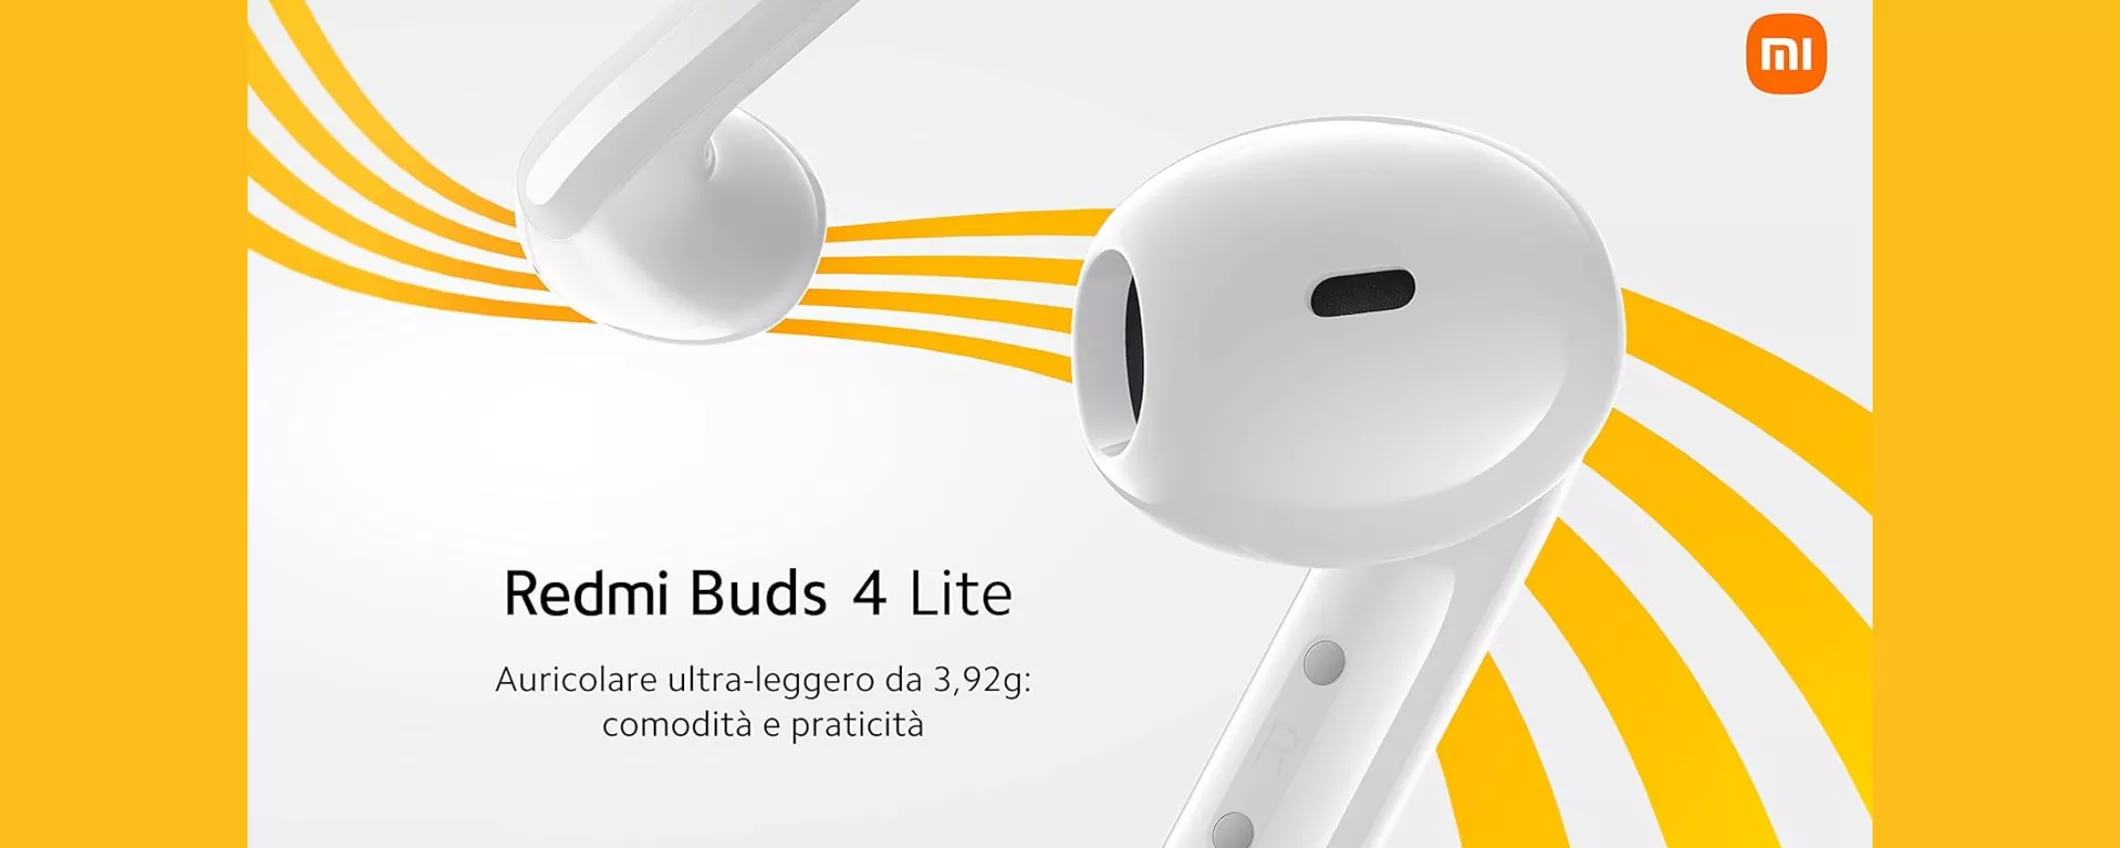 Xiaomi Redmi Buds 4 Lite: SOLO 19€ per gli auricolari PIU' DESIDERATI del momento